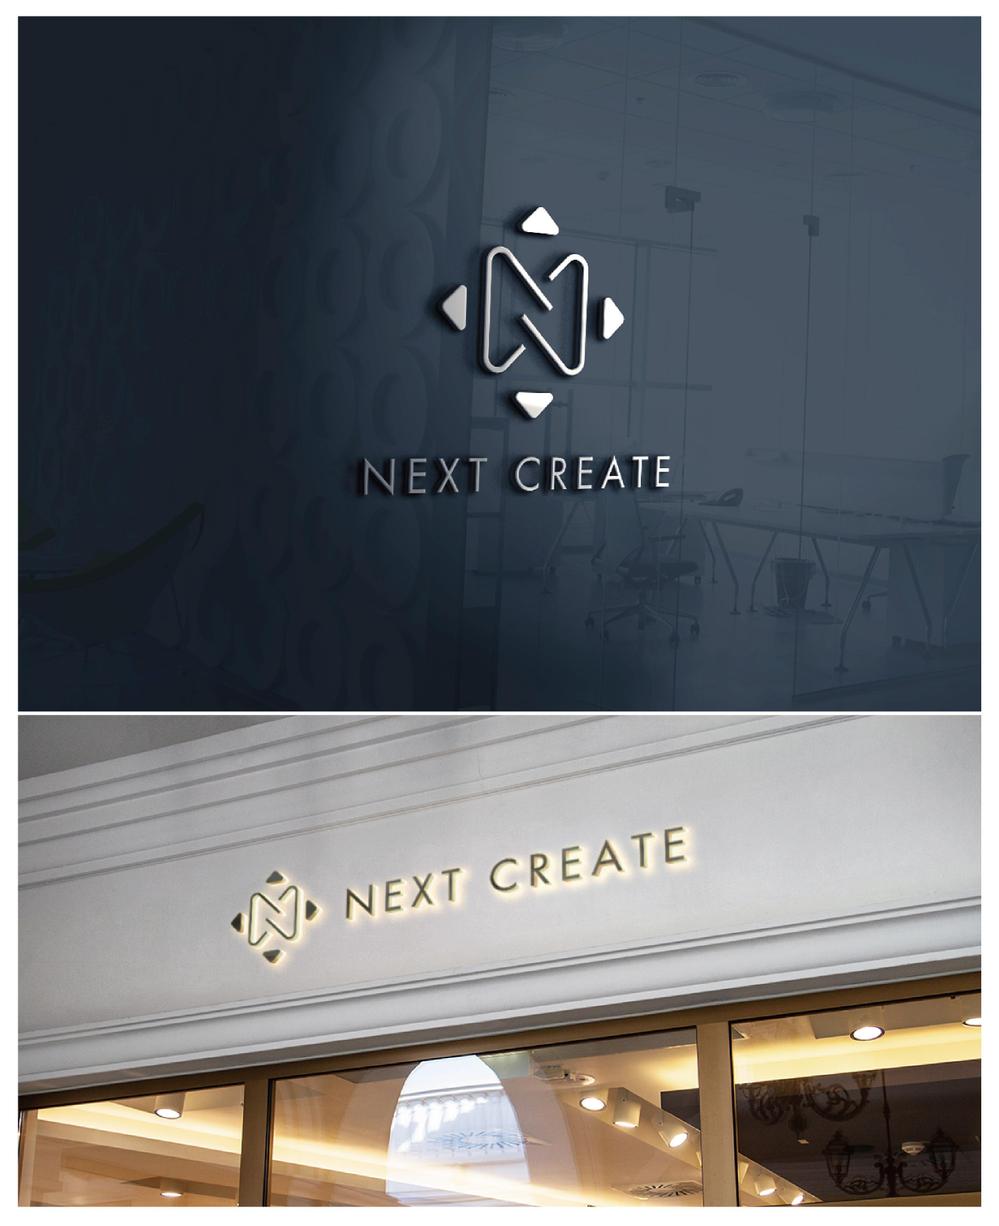 株式会社ネクストクリエイトのロゴとパーソナルトレーニングジム「BODY CREATE」のロゴ